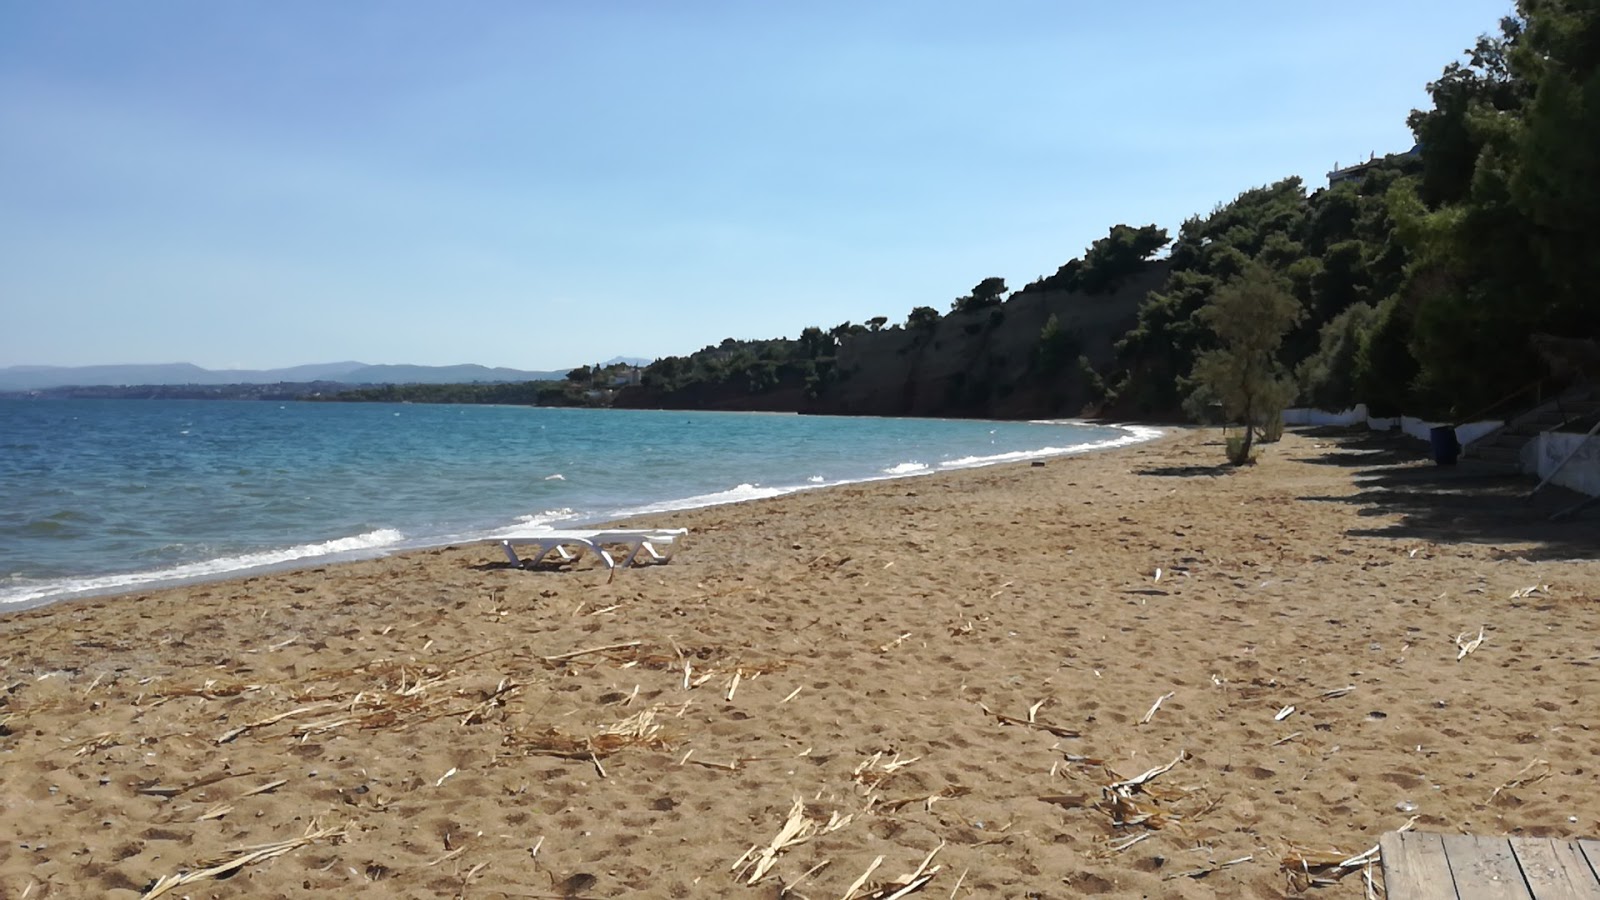 Avlidas beach'in fotoğrafı yeşil su yüzey ile